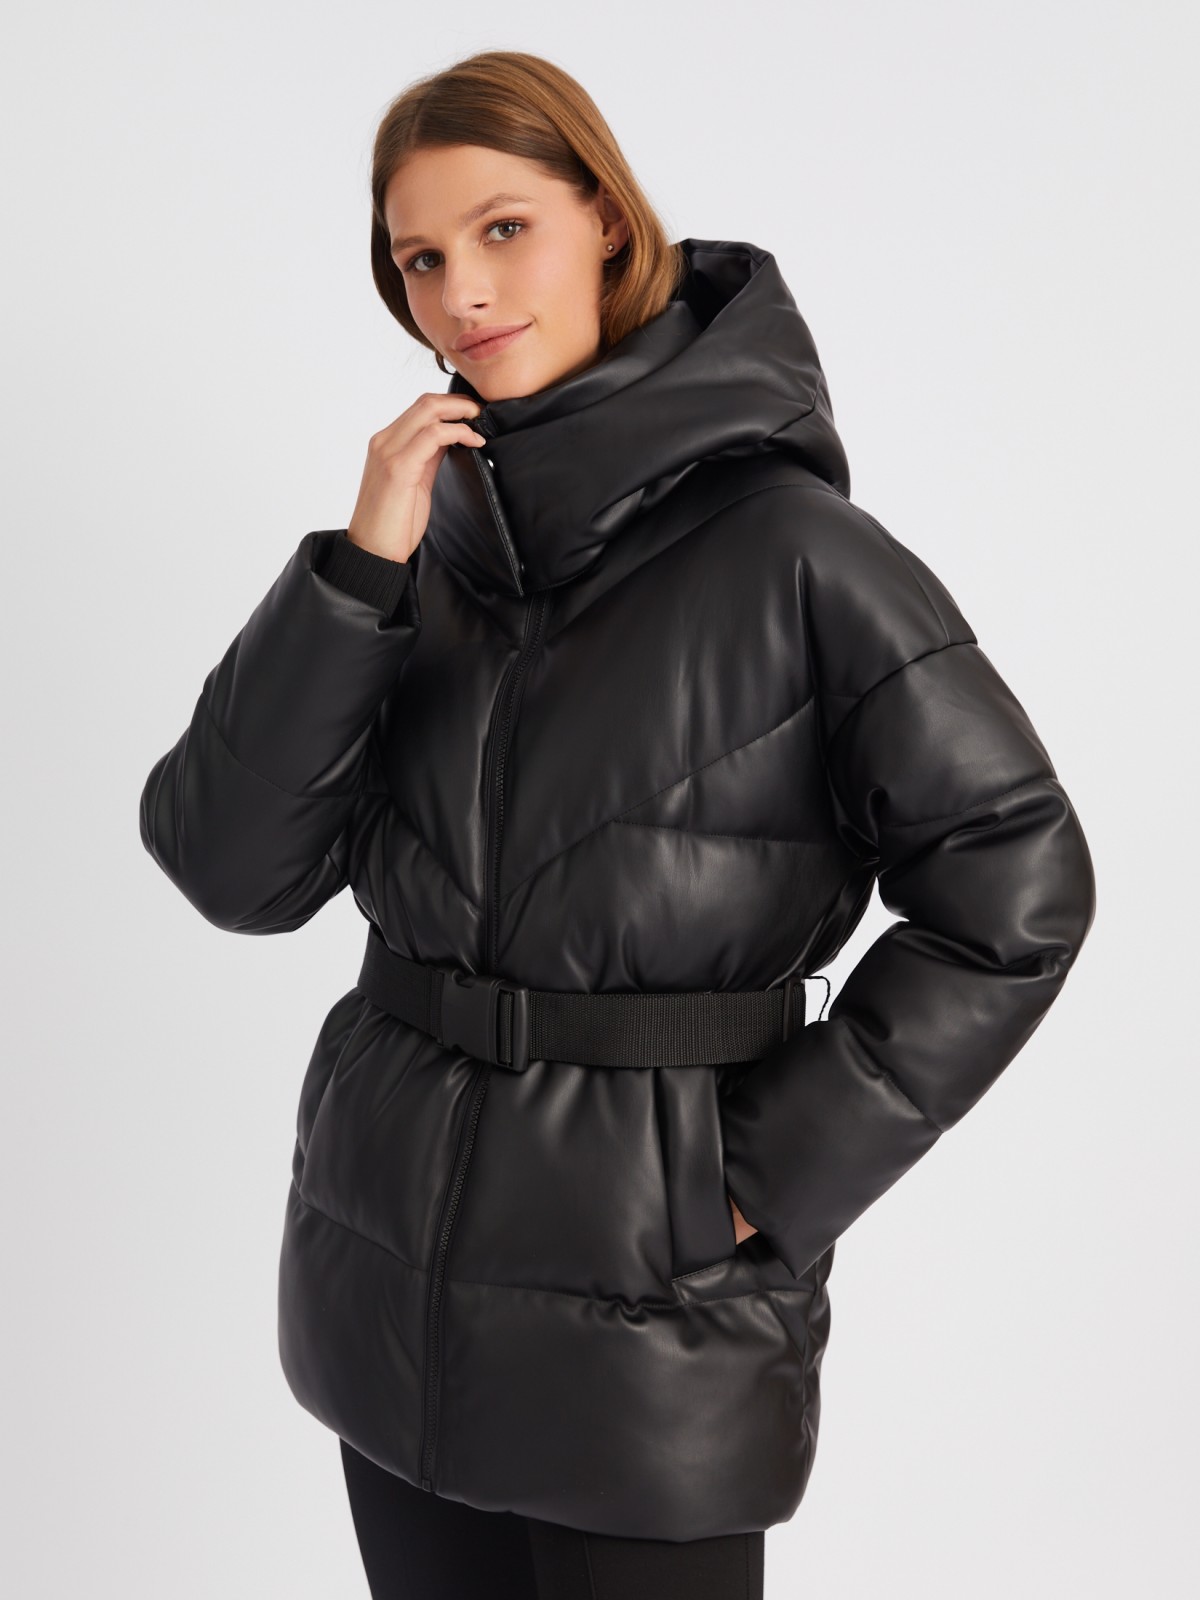 Тёплая куртка из экокожи с капюшоном и поясом zolla 023425102024, цвет черный, размер XS